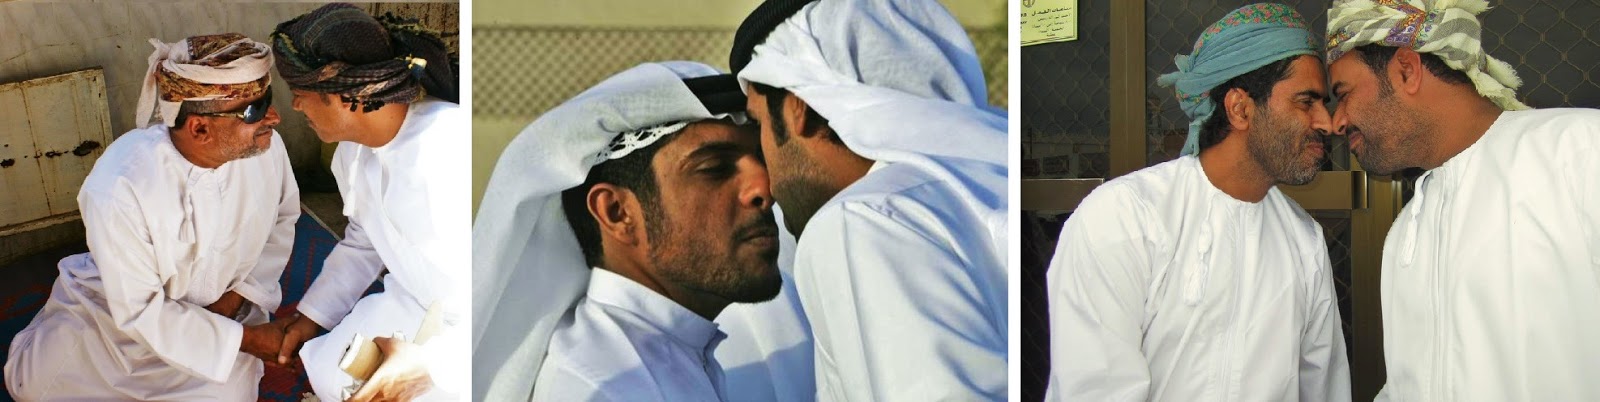 Il bacio in Oman – foto